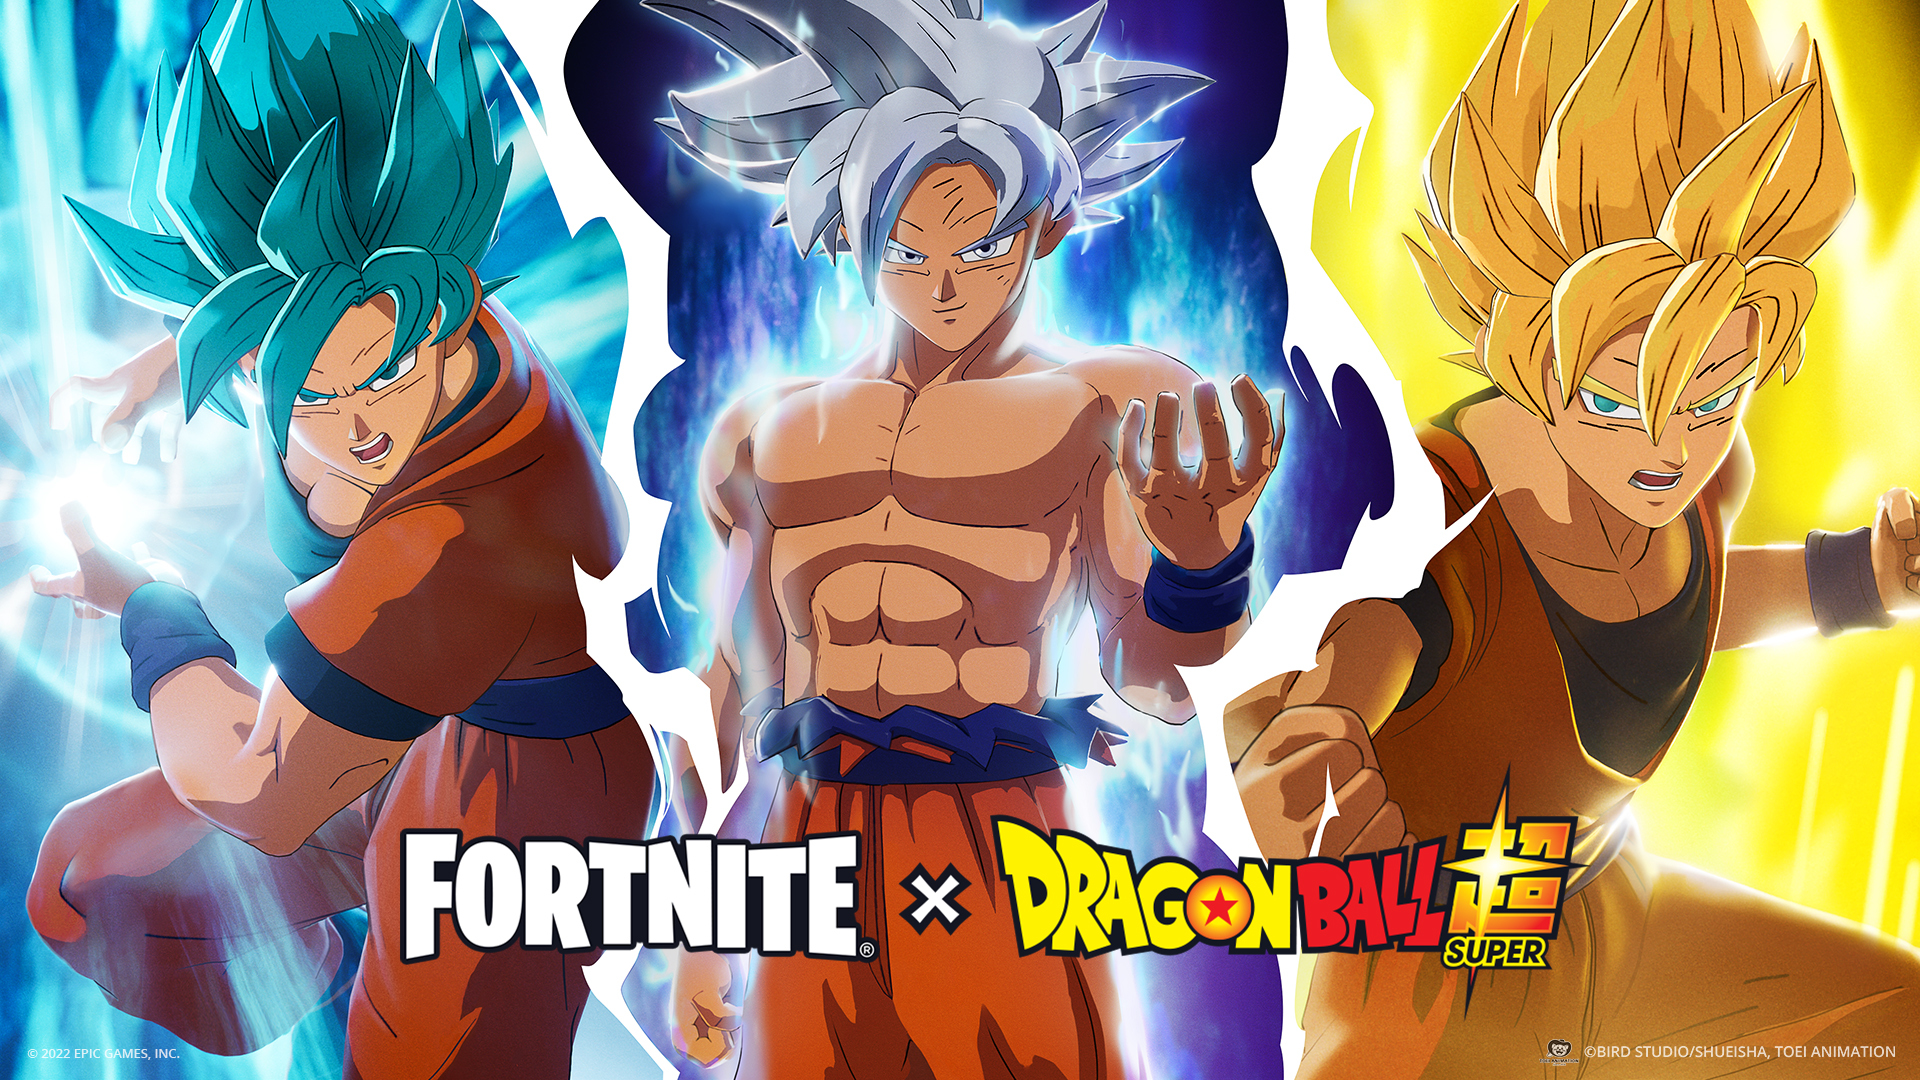 La potencia de Goku llega a Fortnite x Dragon Ball